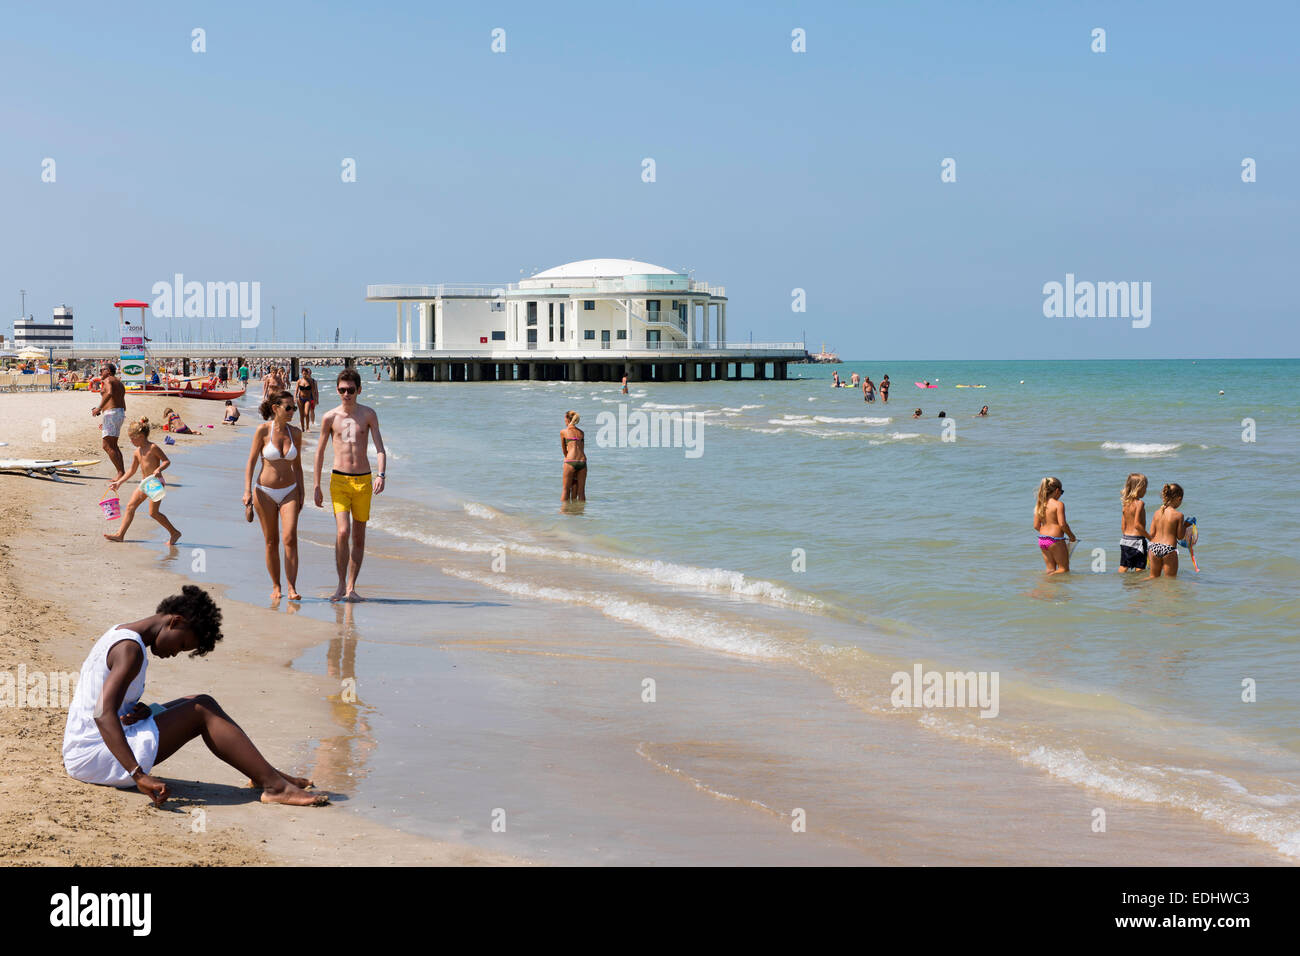 Spiaggia, Rotonda al Mare, Ingresso Rotonda, Senigallia, provincia di Ancona, Marche, Italia Foto Stock